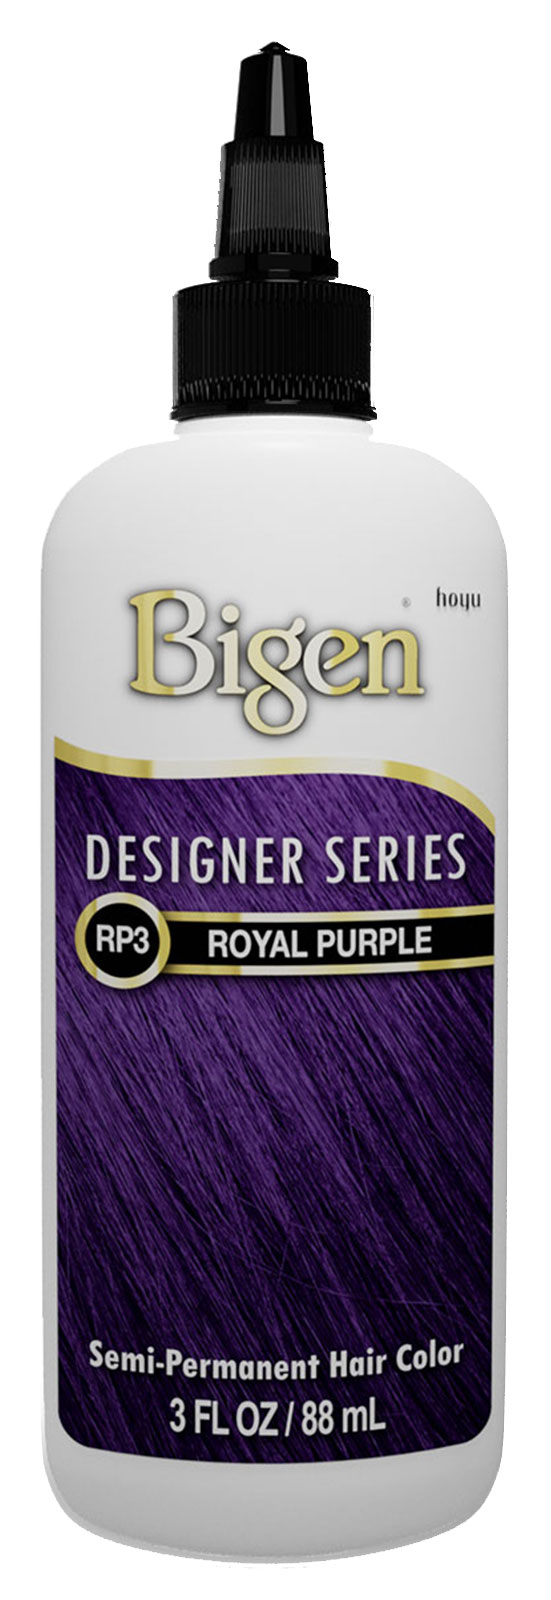 RP3-Royal Purple